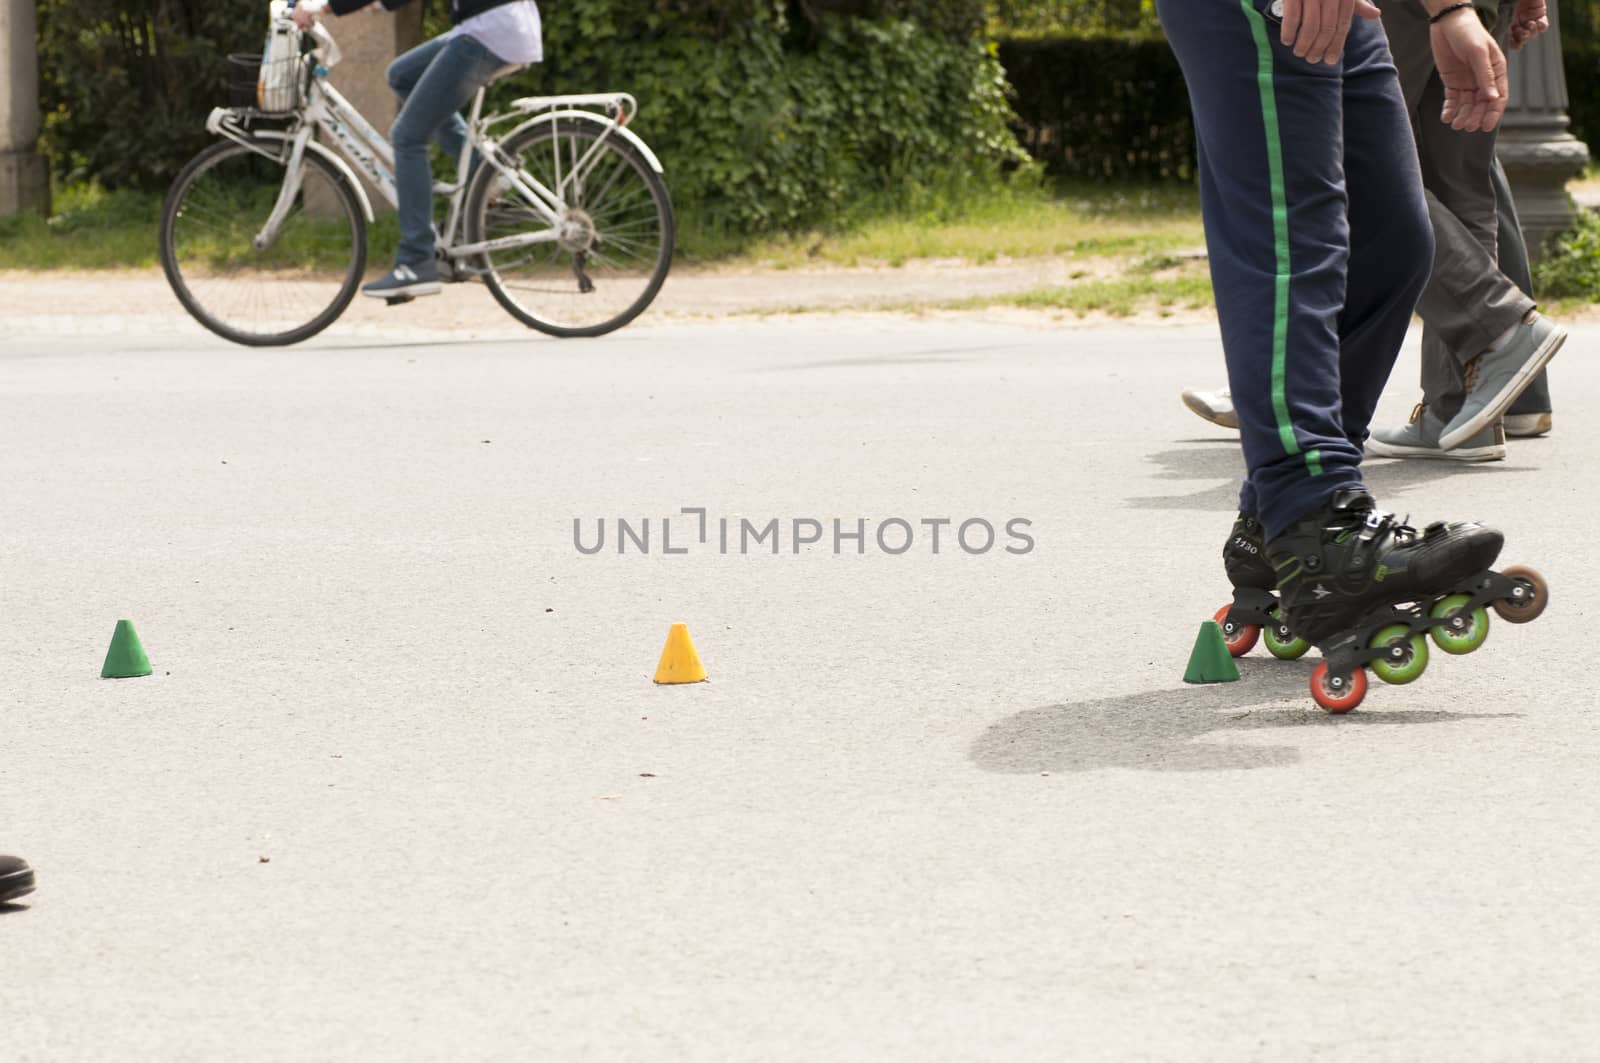 Roller skater practicing slalom along a line of cones on asphalt.